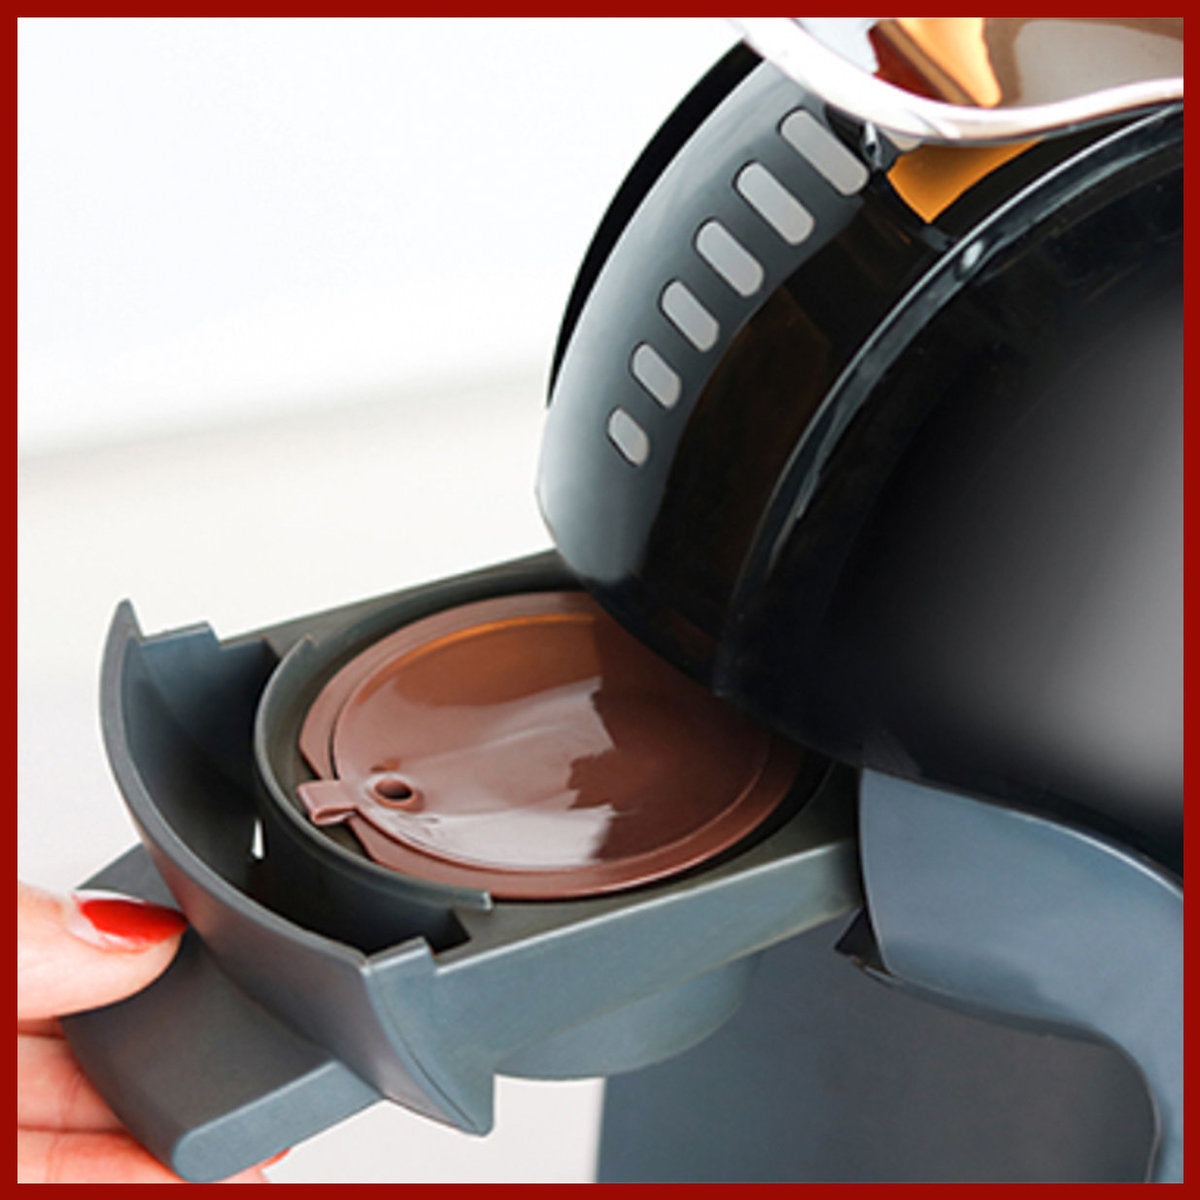 3件裝-【3件裝】可重複使用的咖啡替代膠囊套裝 可填充濃縮咖啡 Dolce Gusto ®咖啡過濾器膠囊殼 環保先 可重用 咖啡壺